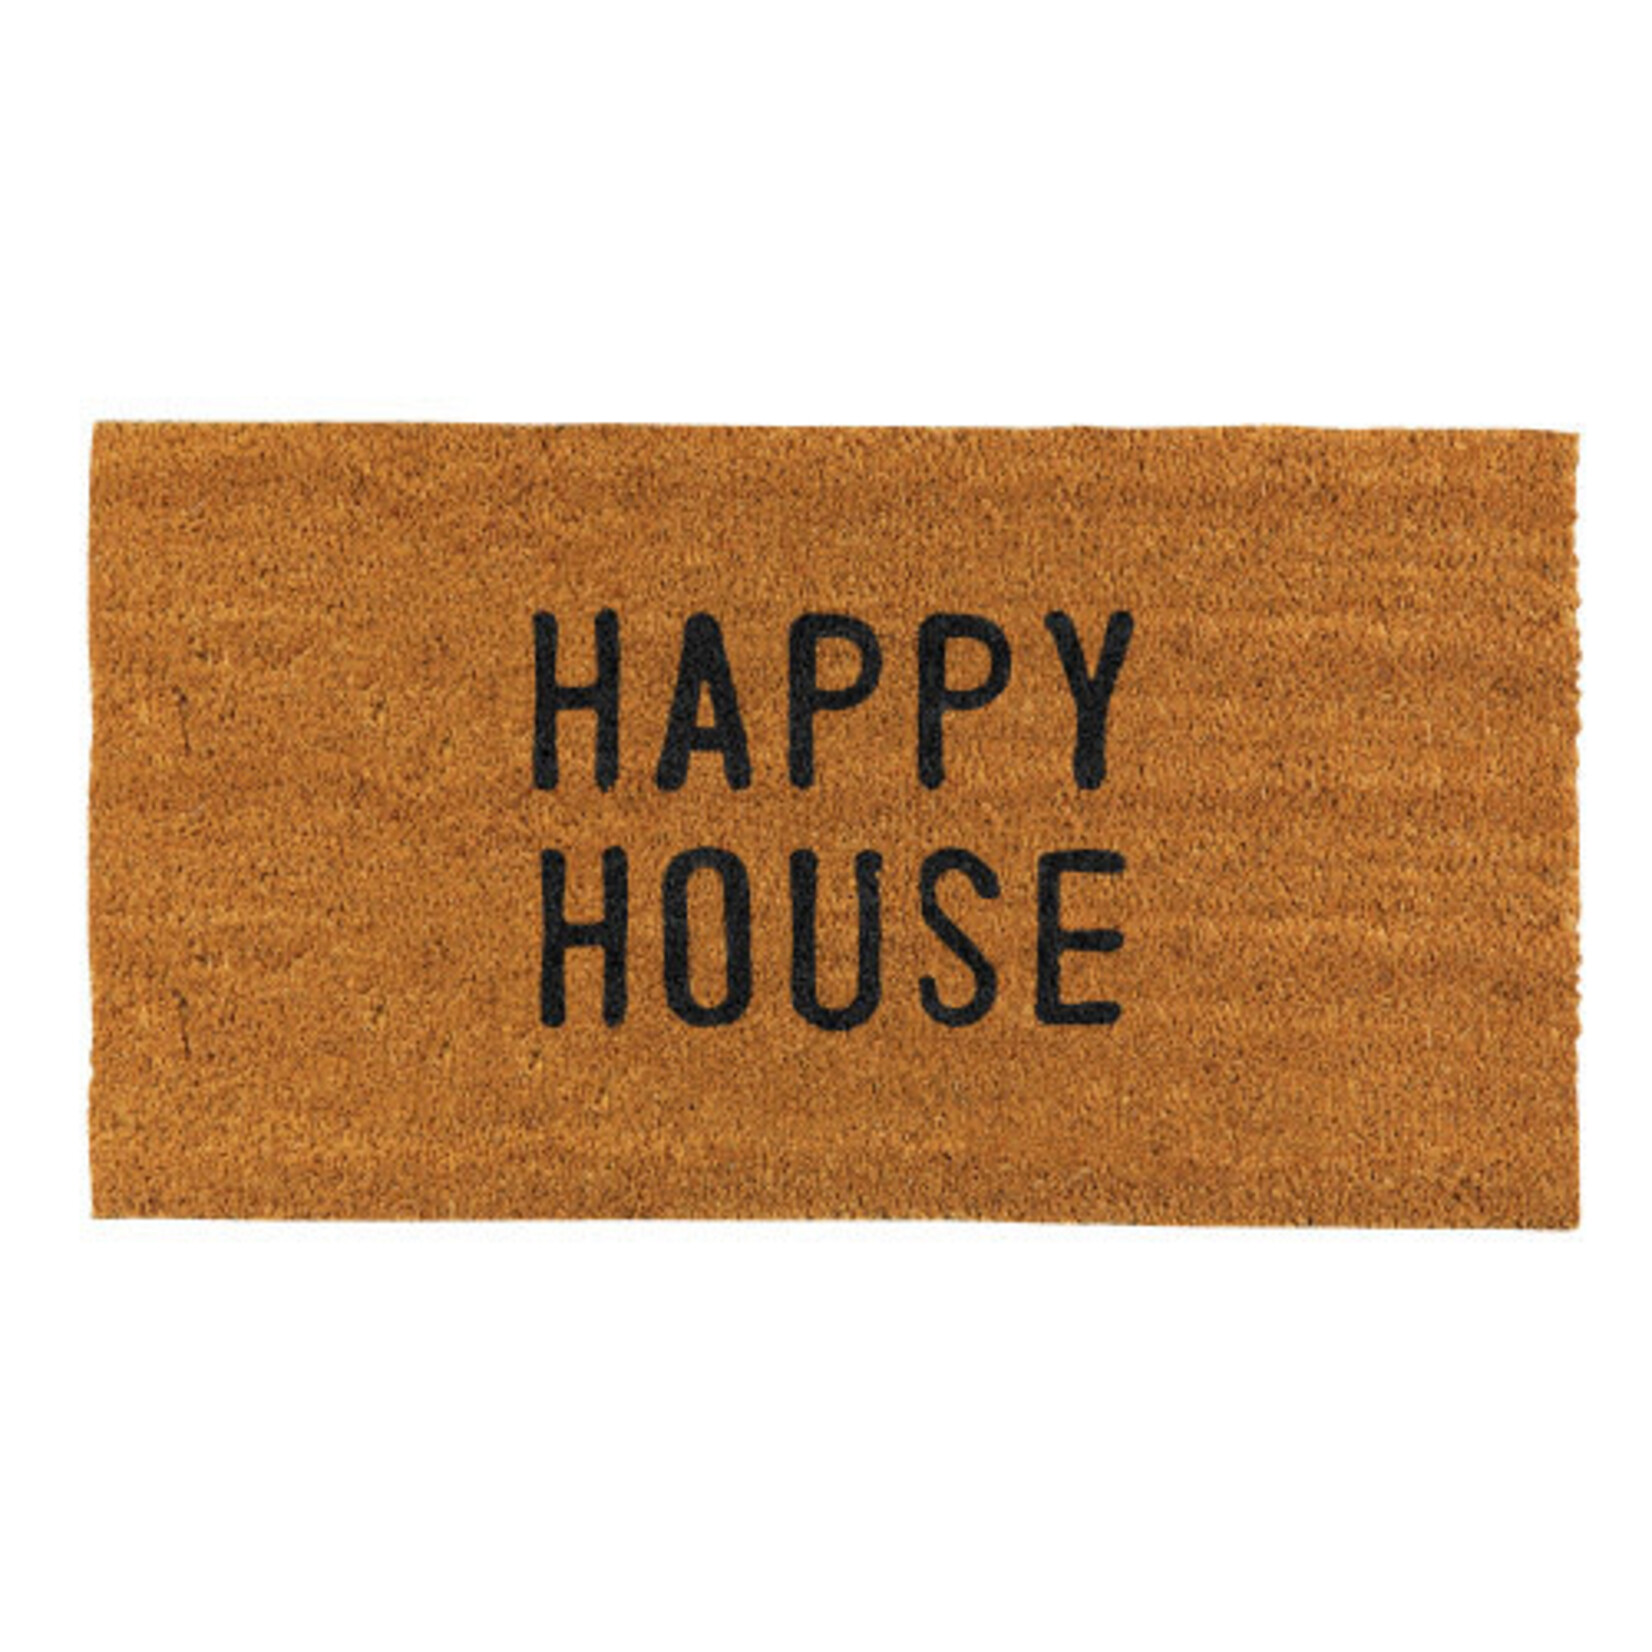 Creative Brands Happy House Doormat